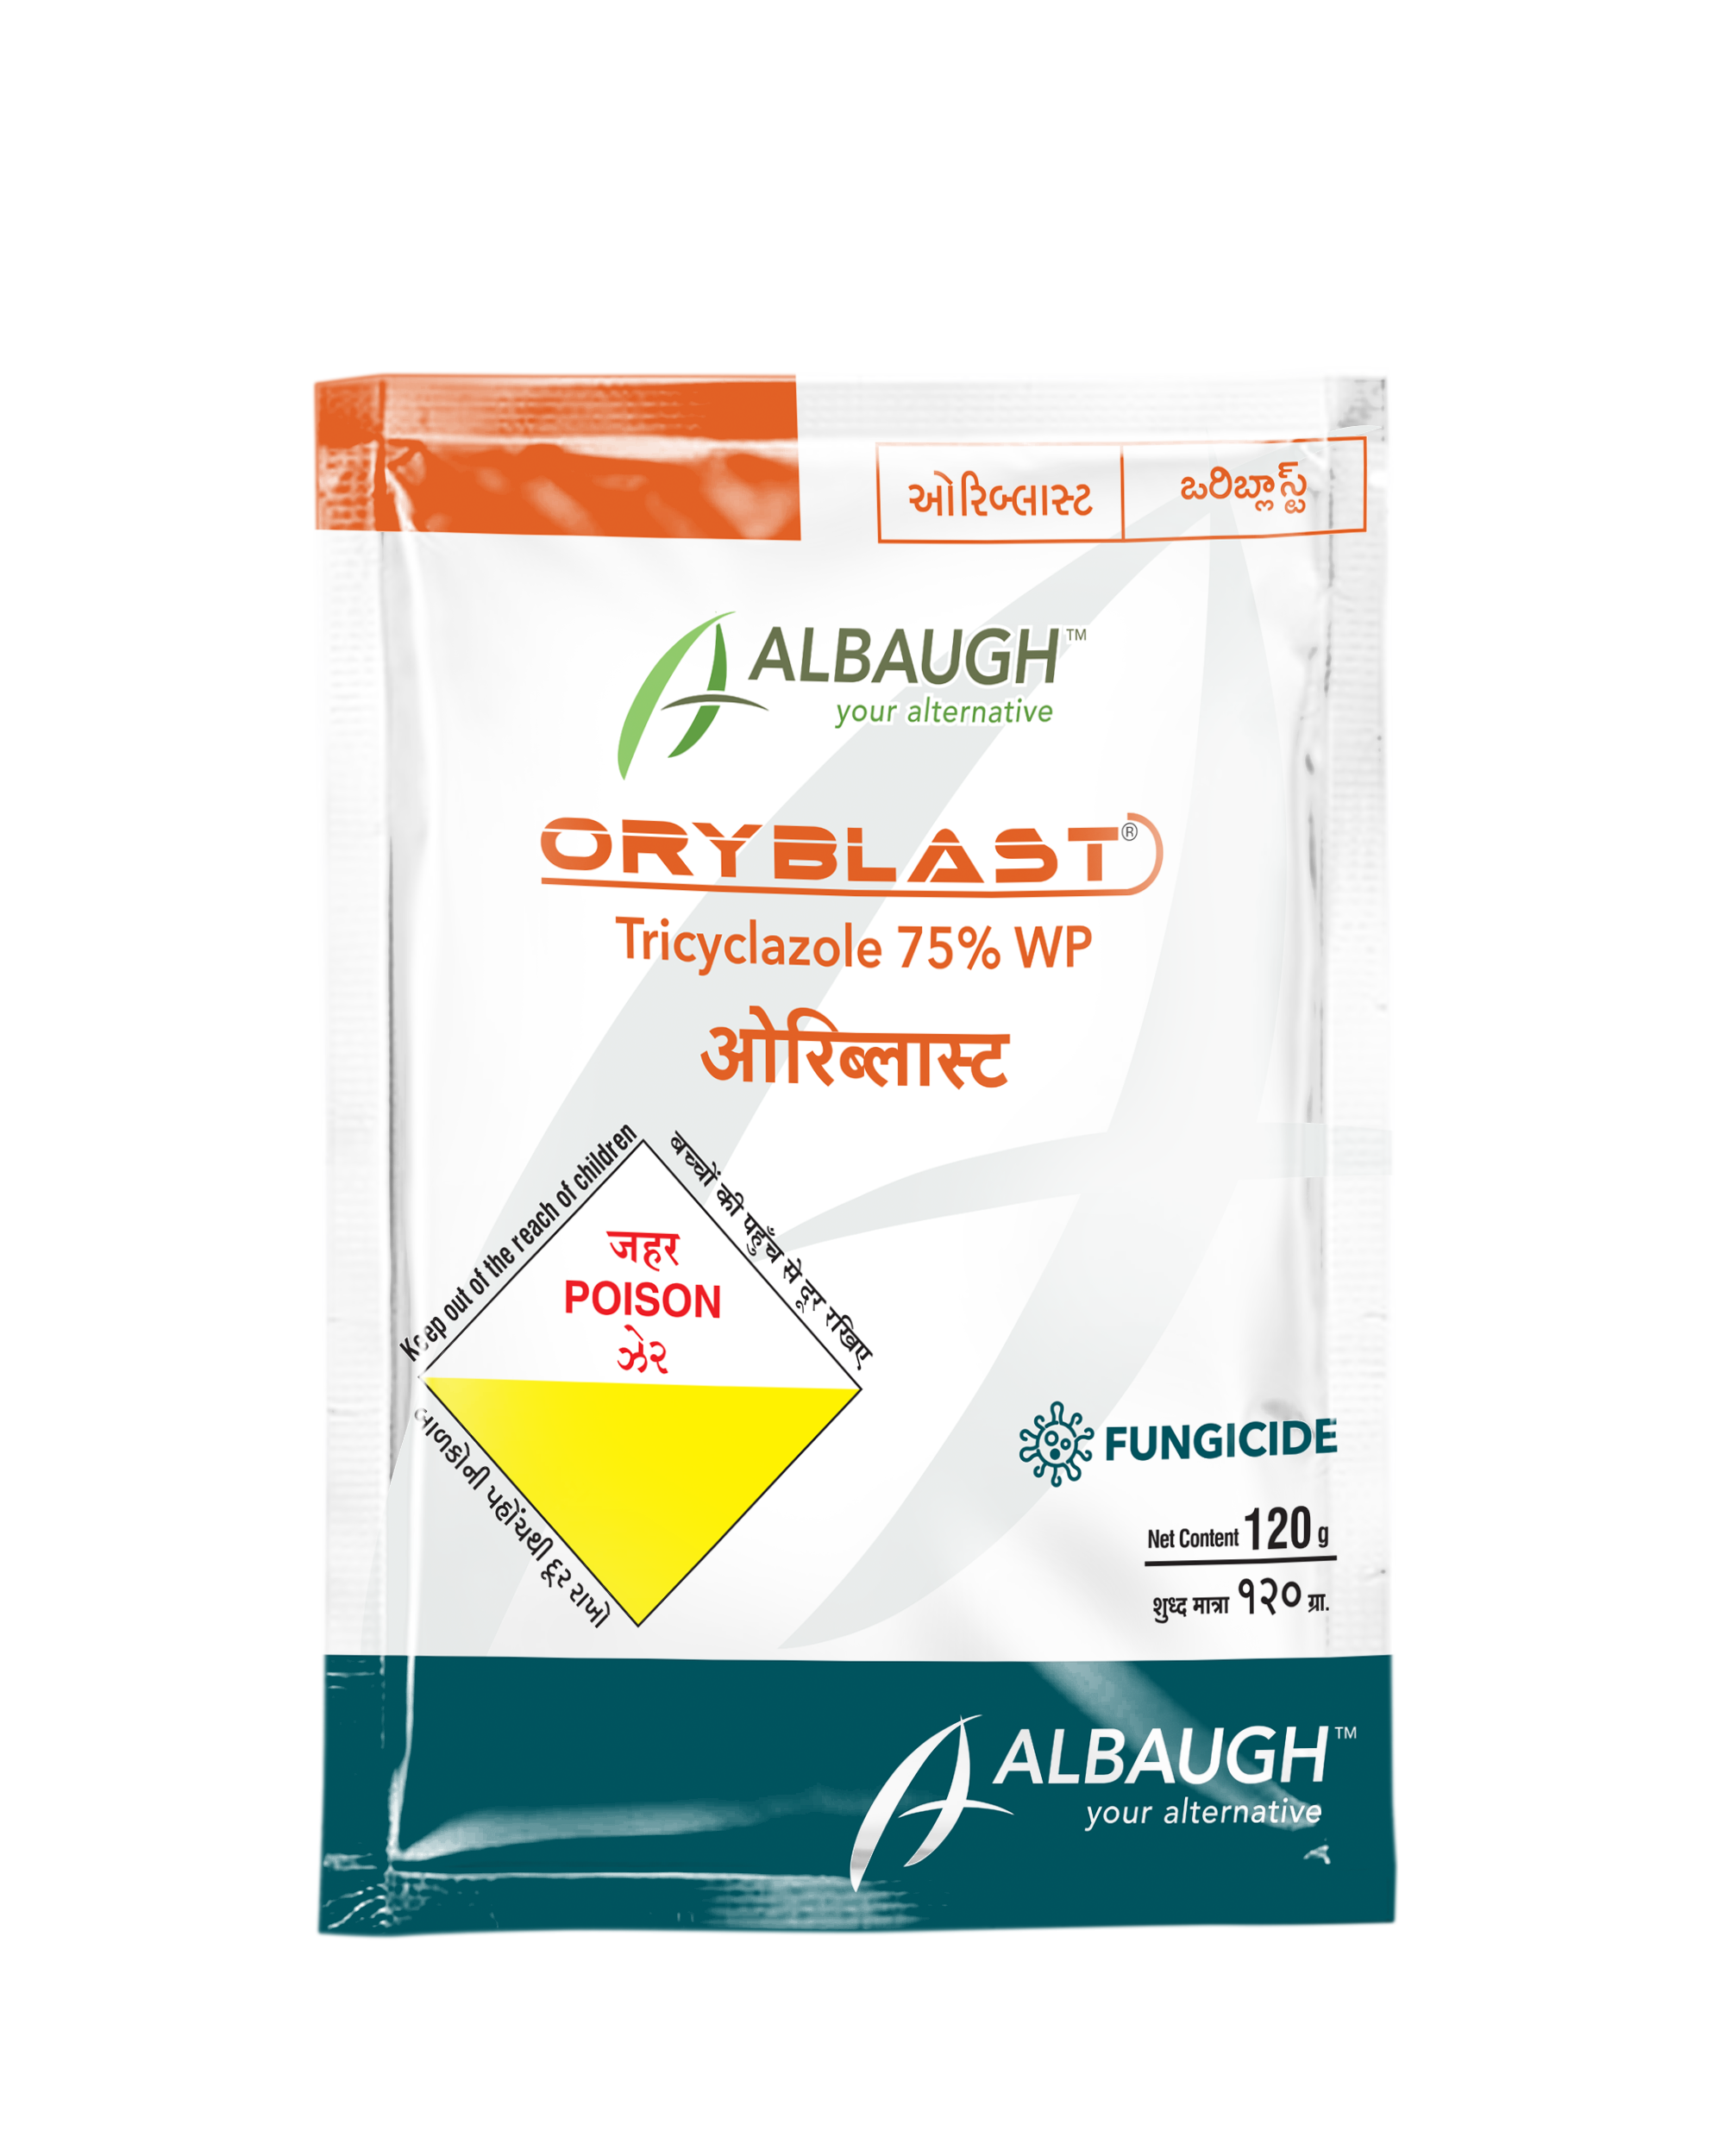 Oryblast: Tricyclazole 75% WP